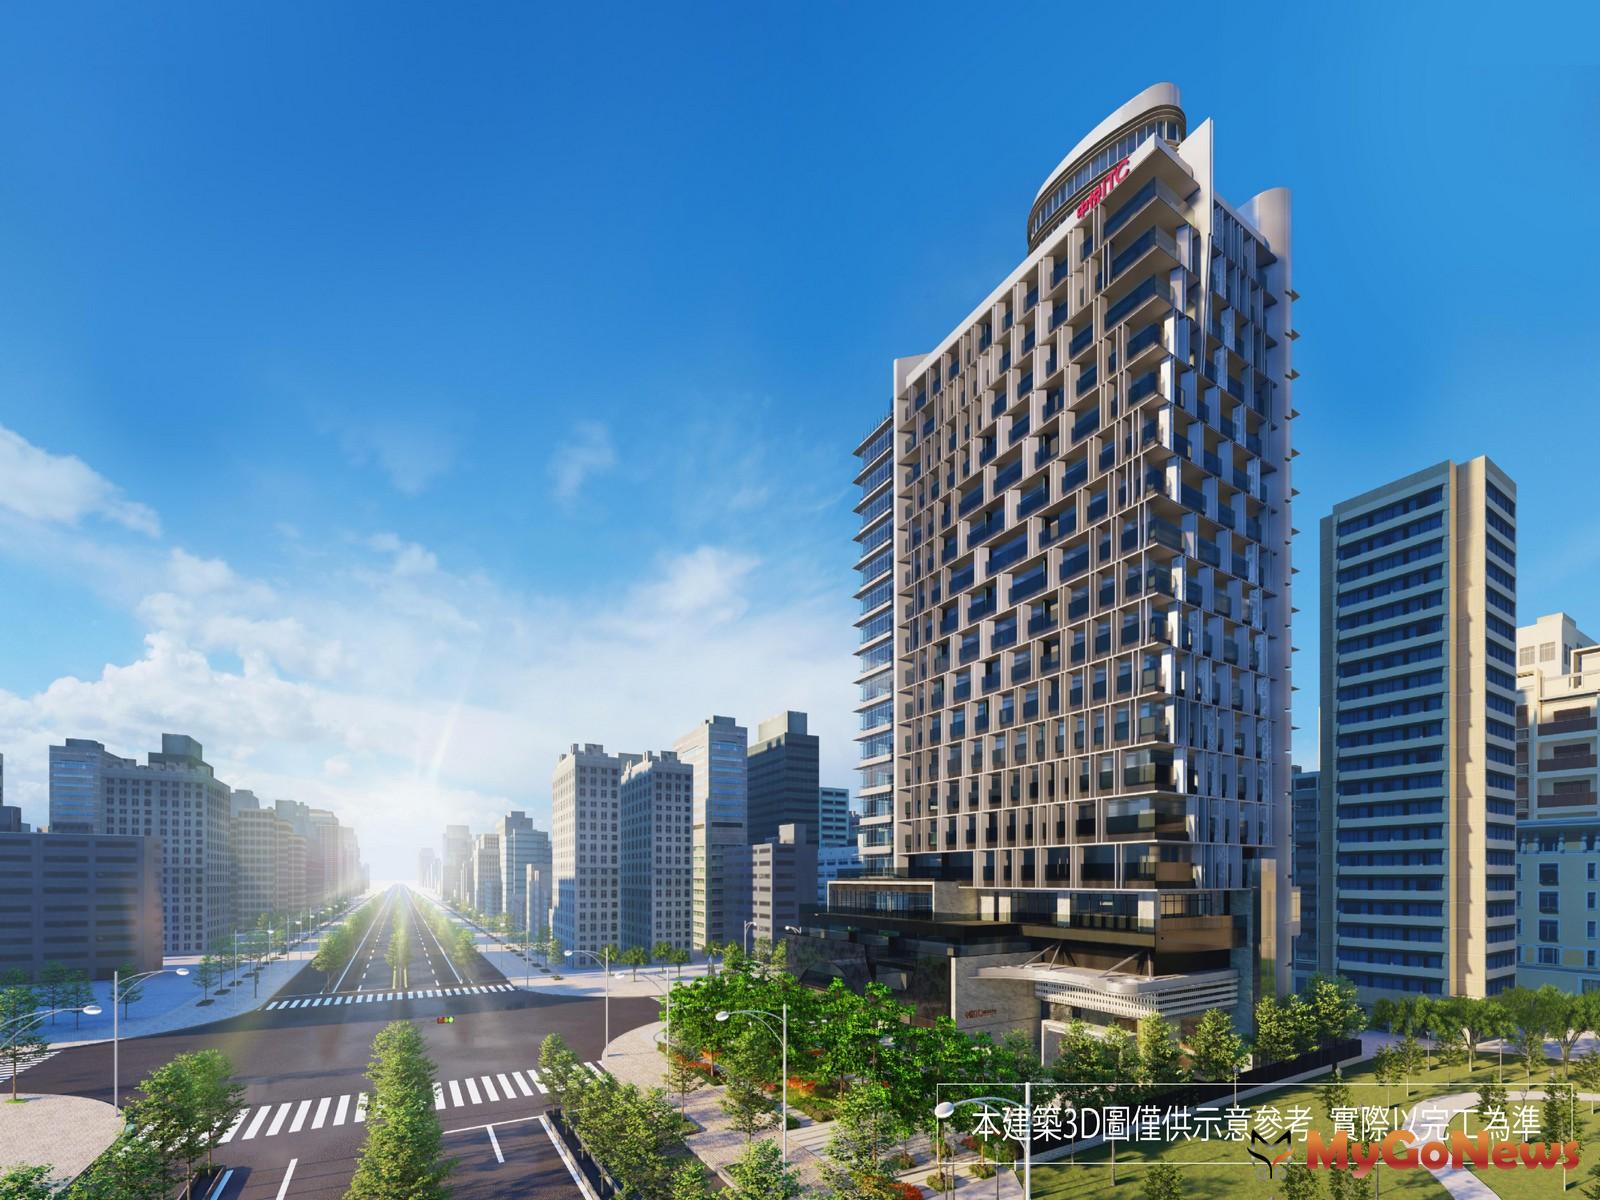 八京建設超前部署「中悦ITC國際商貿中心」